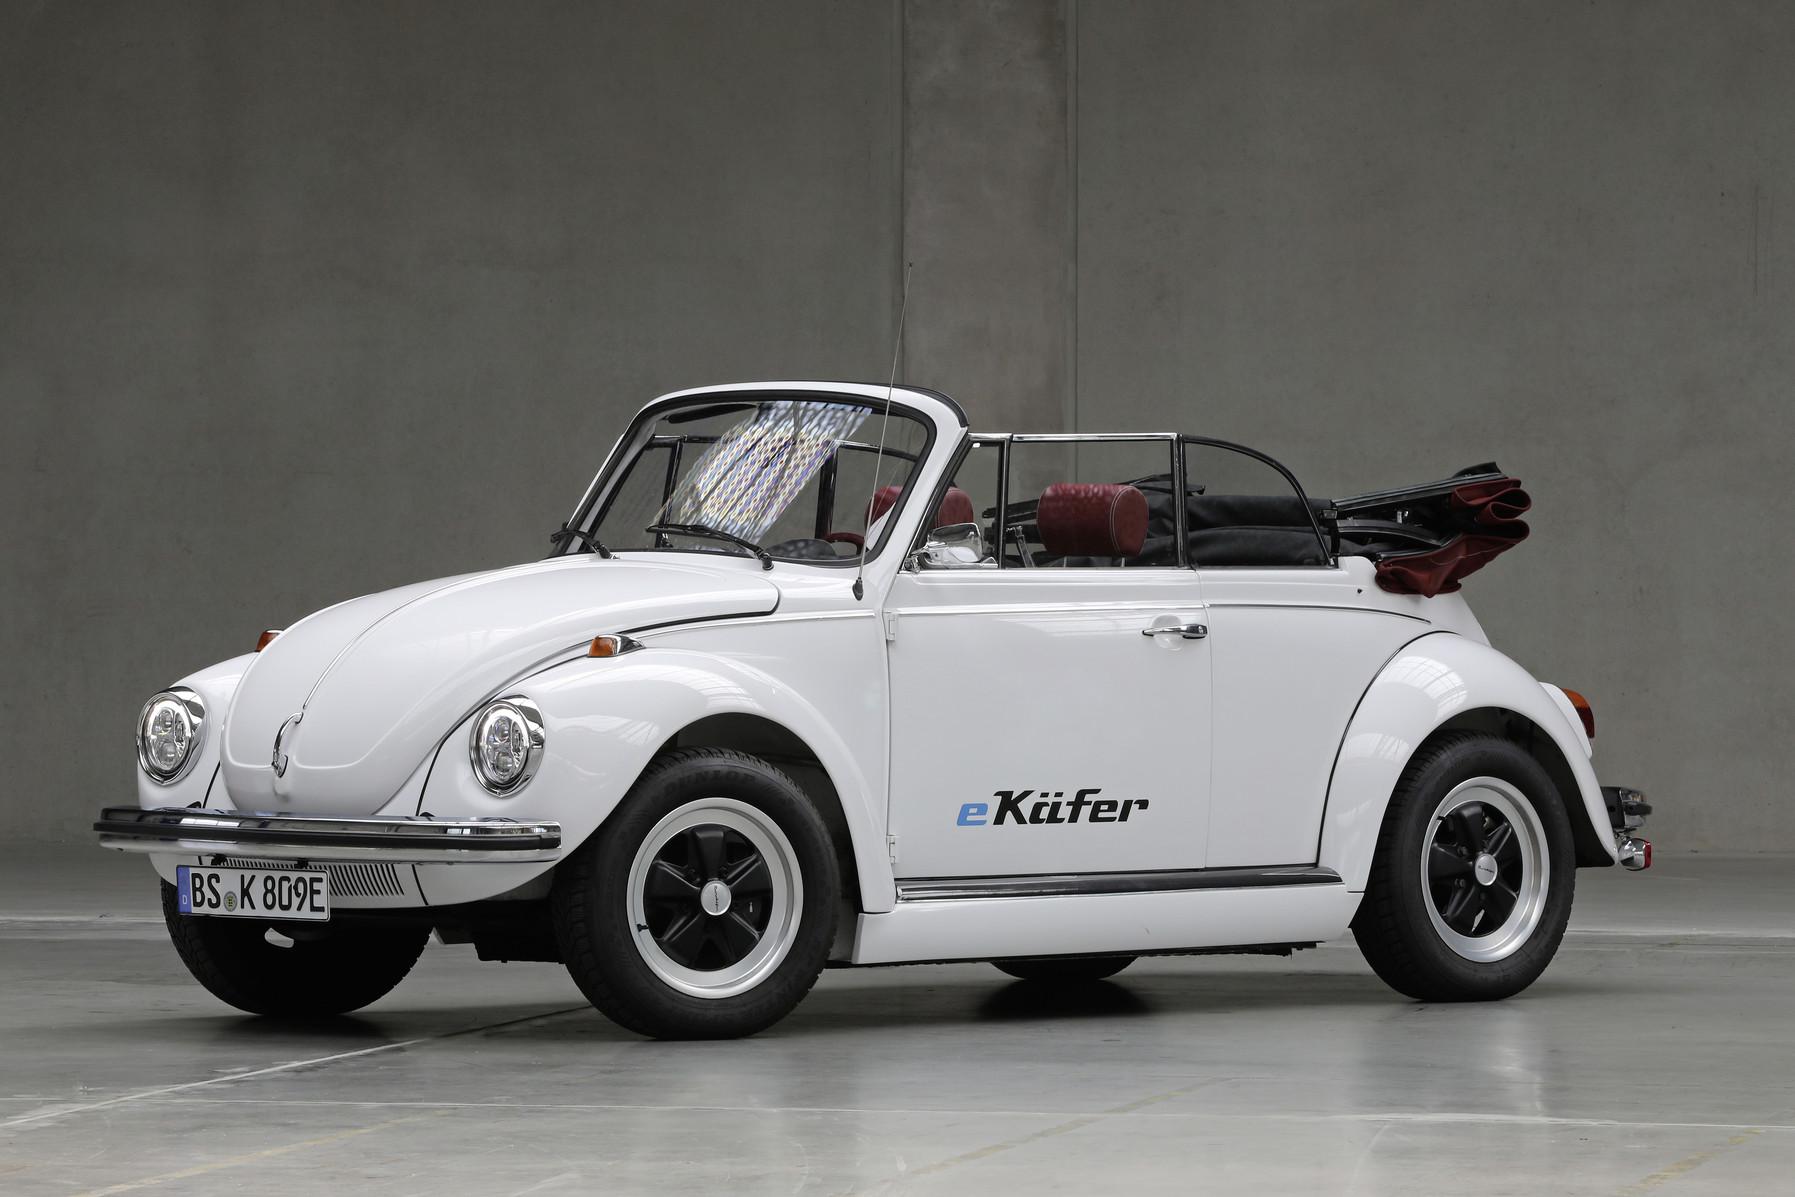 Volkswagen e-Beetle Concept เมื่อโฟล์คเต่าจะกลายร่างเป็นรถยนต์ไฟฟ้า